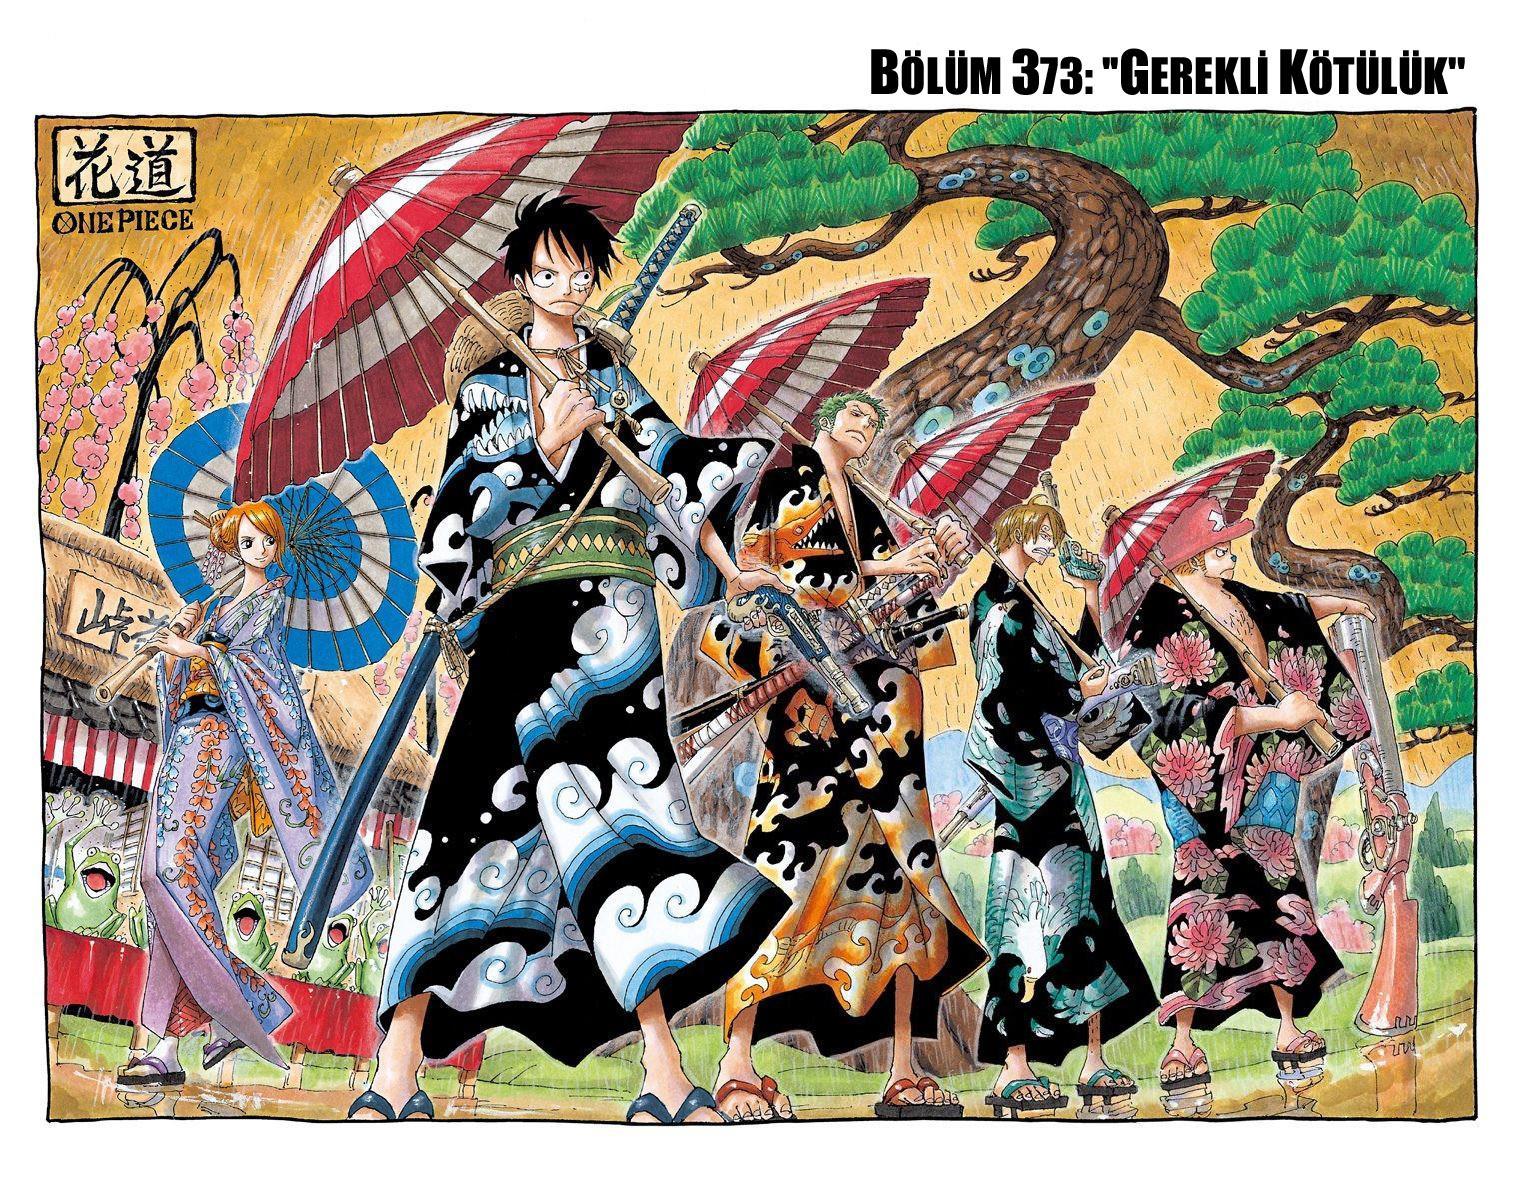 One Piece [Renkli] mangasının 0373 bölümünün 2. sayfasını okuyorsunuz.